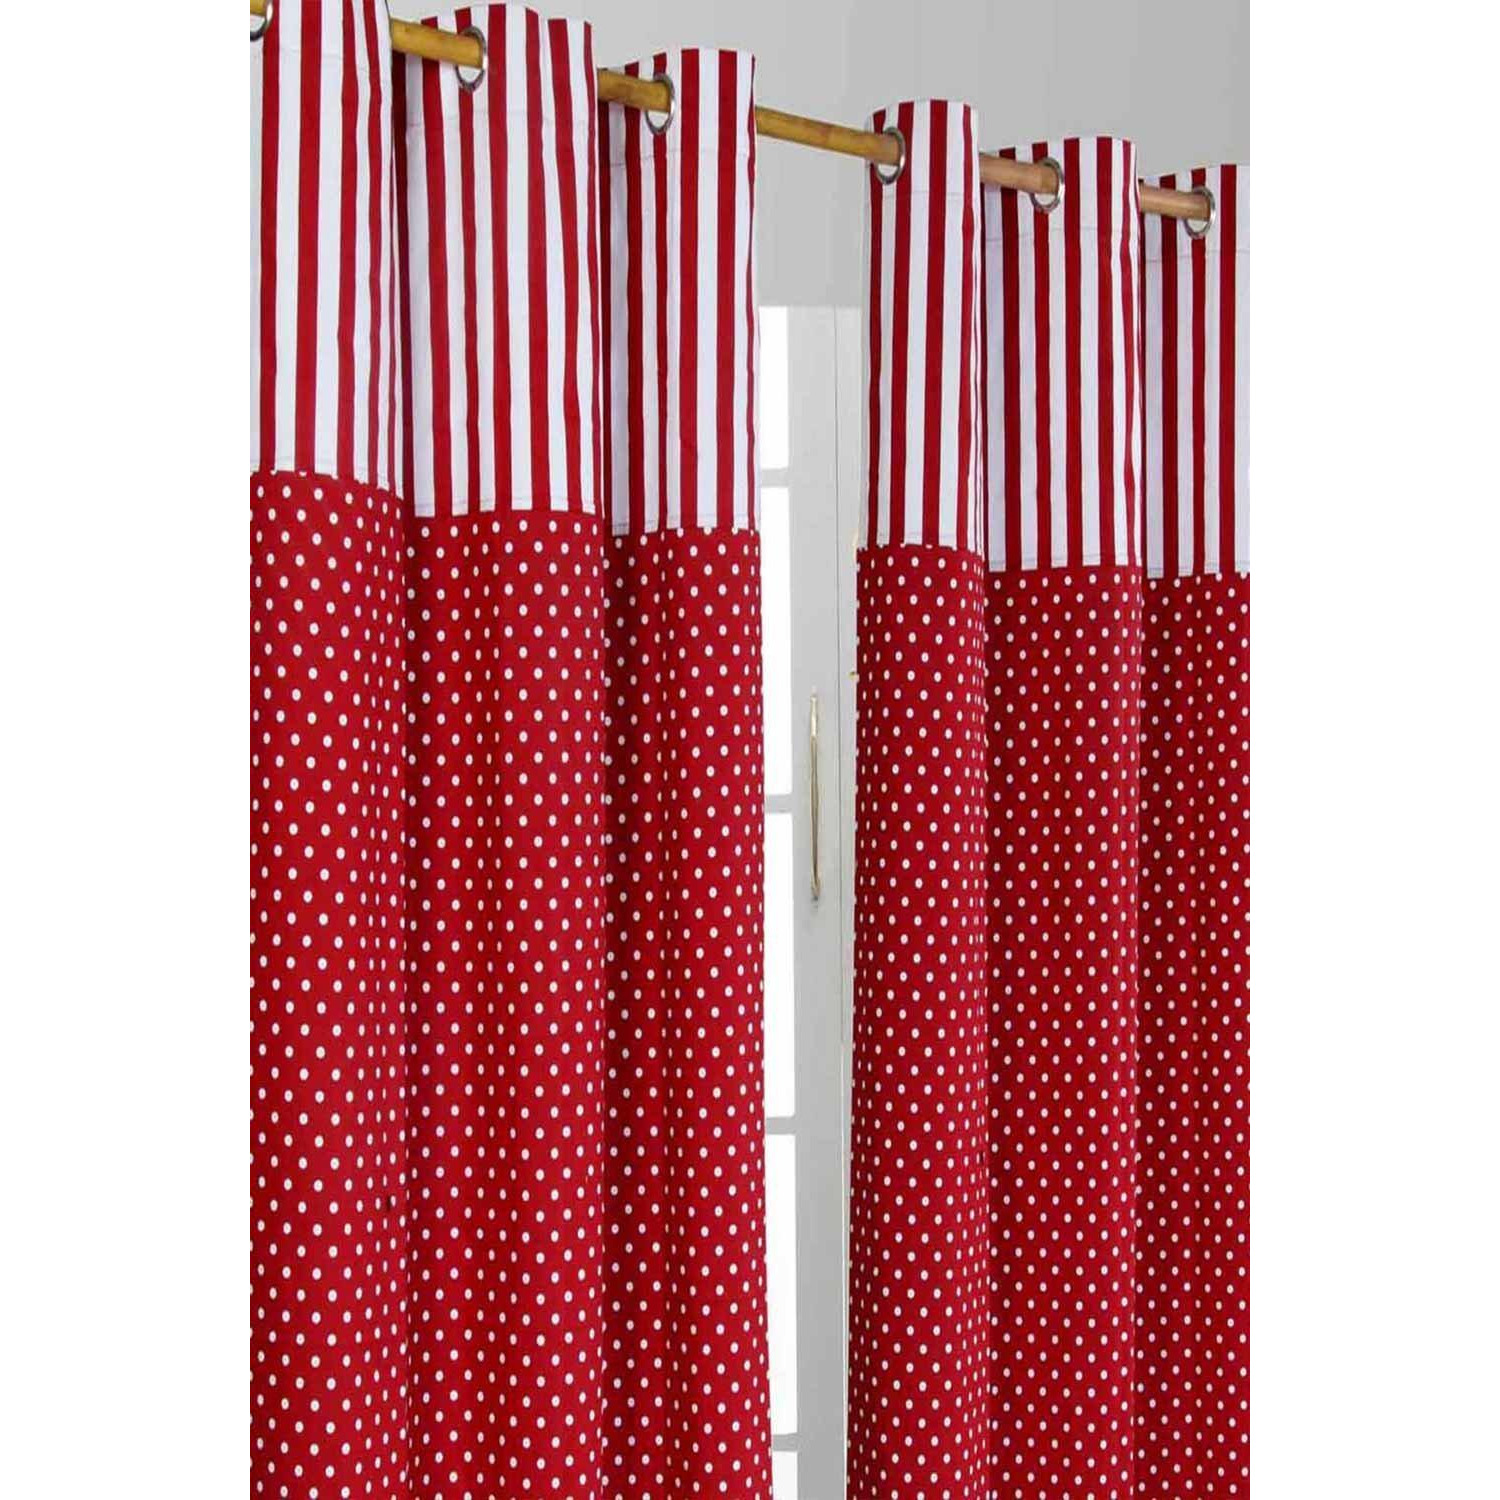 Polka Dots Red Ready Made Eyelet Curtain Pair - image 1